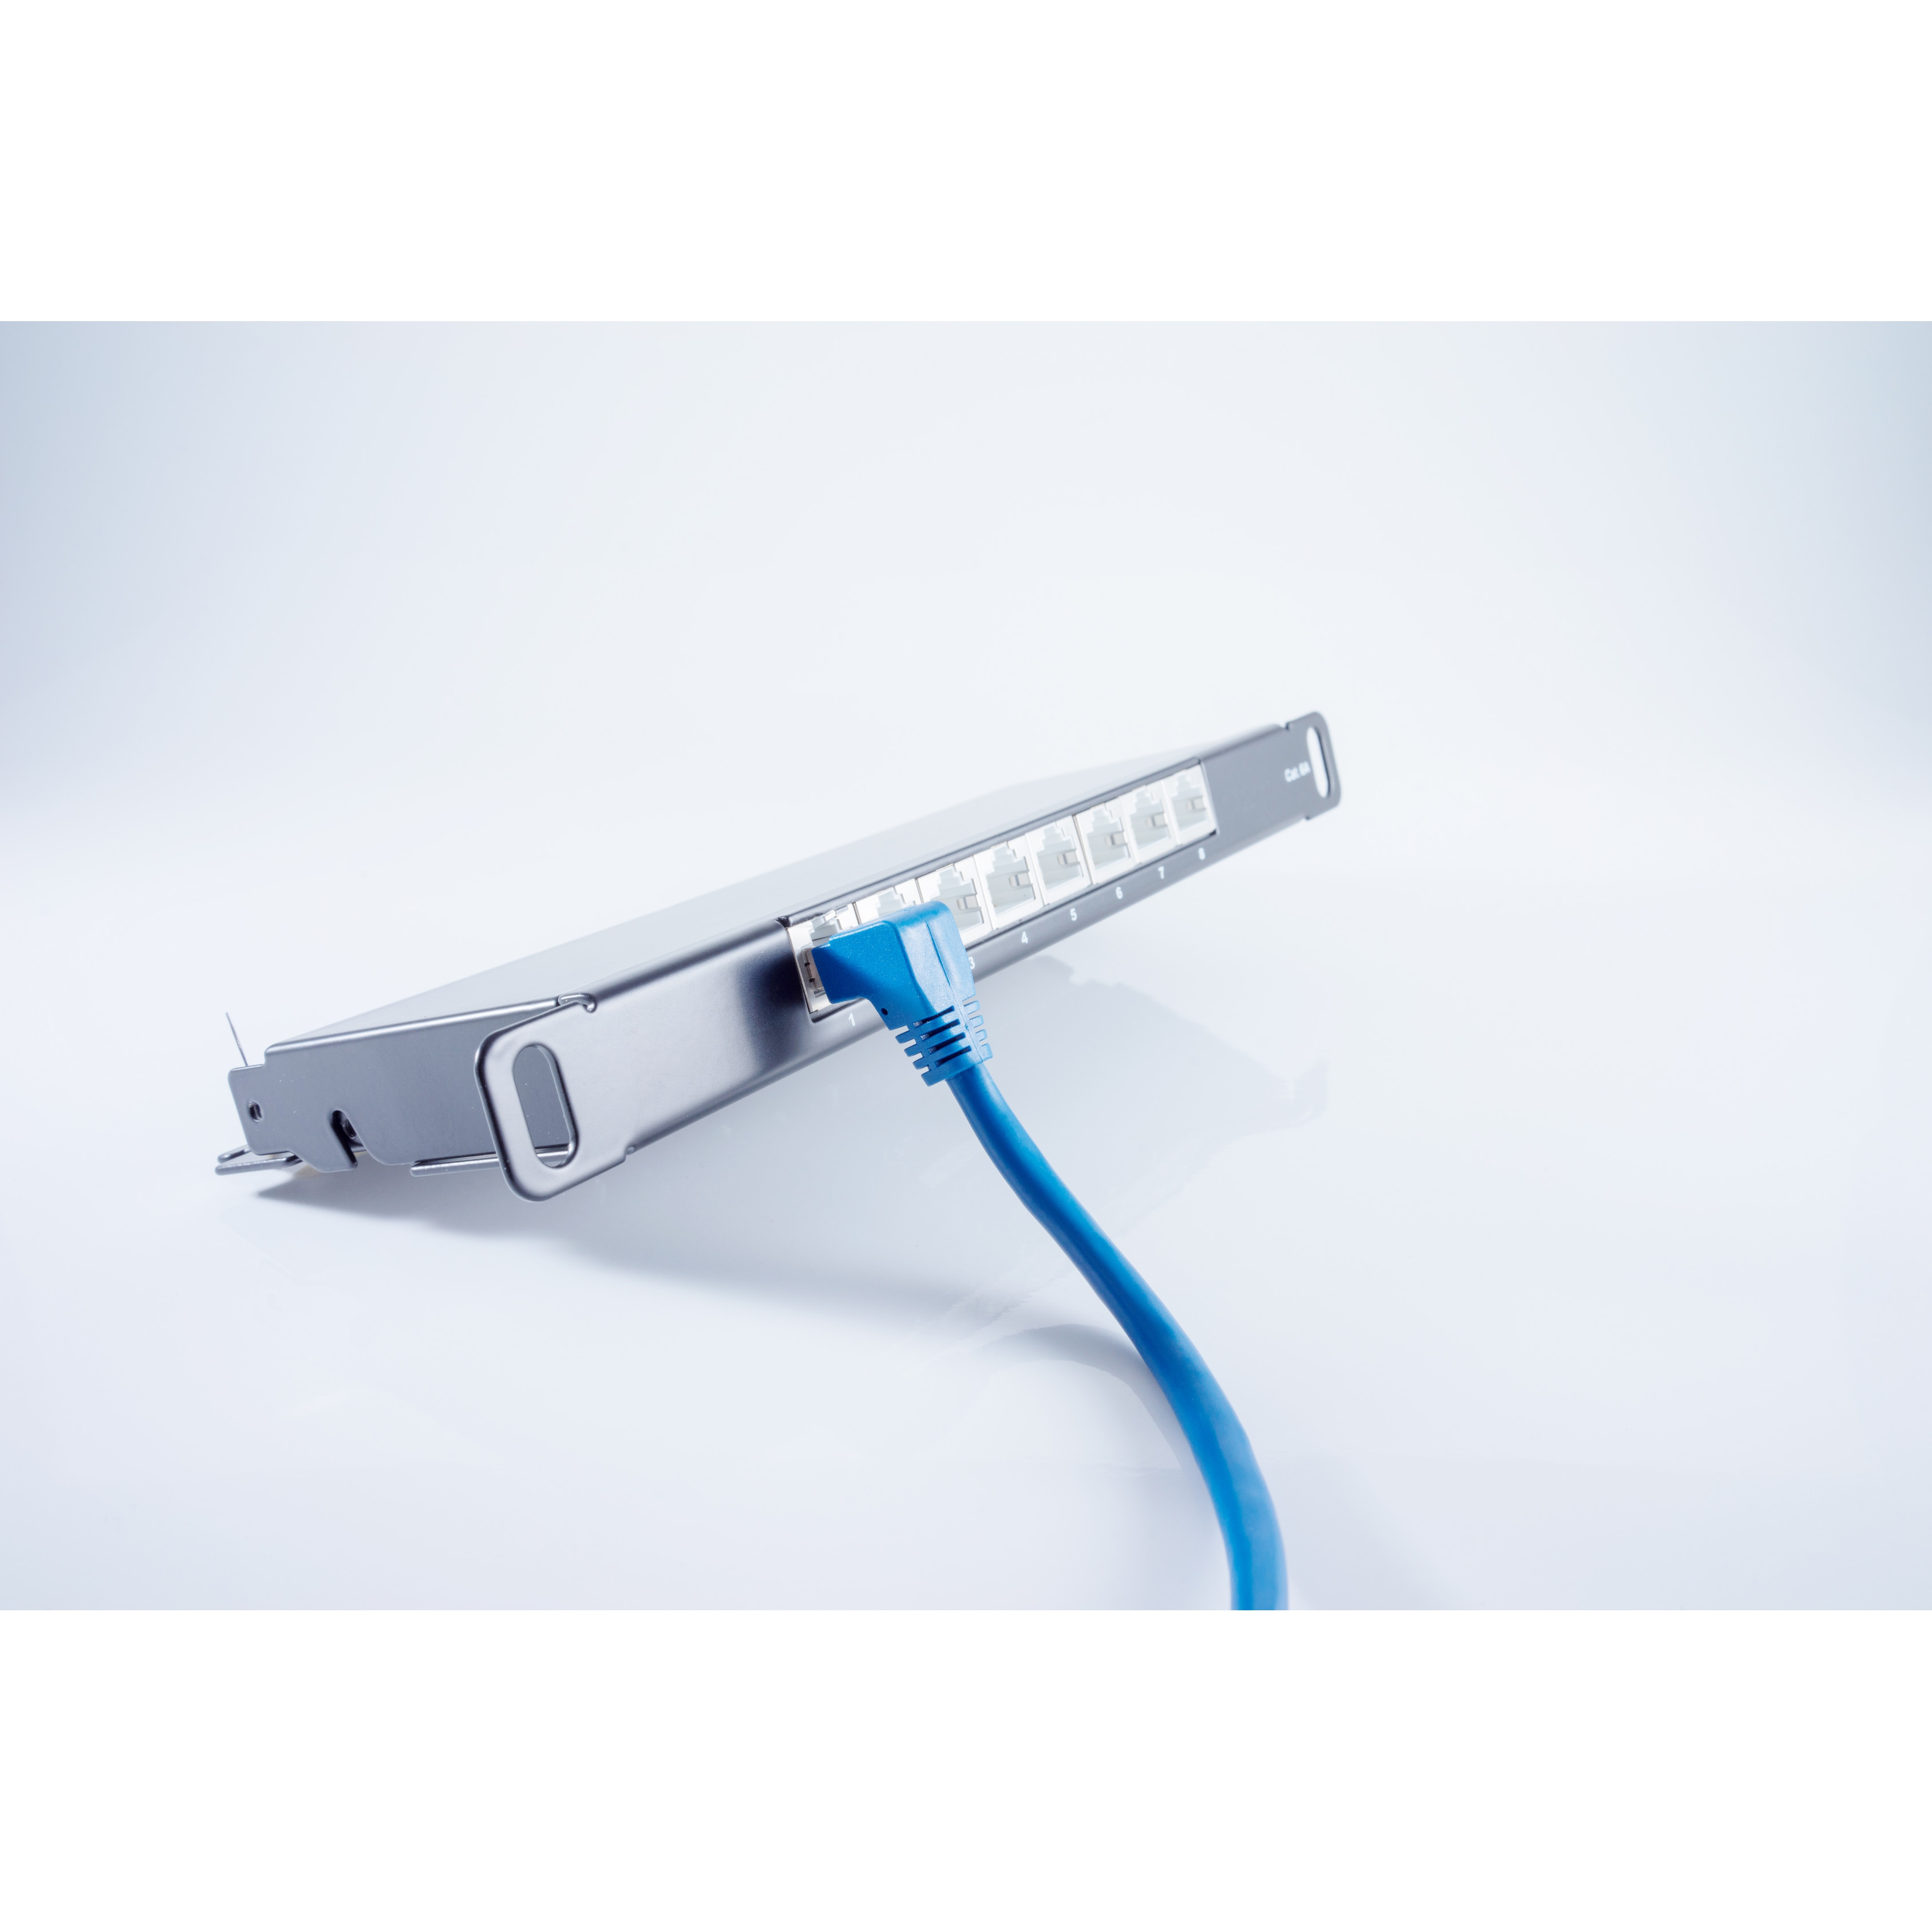 KABELBUDE Kabel cat Winkel-gerade S/FTP blau RJ45, 0,5m, Patchkabel m 6 PIMF 0,50